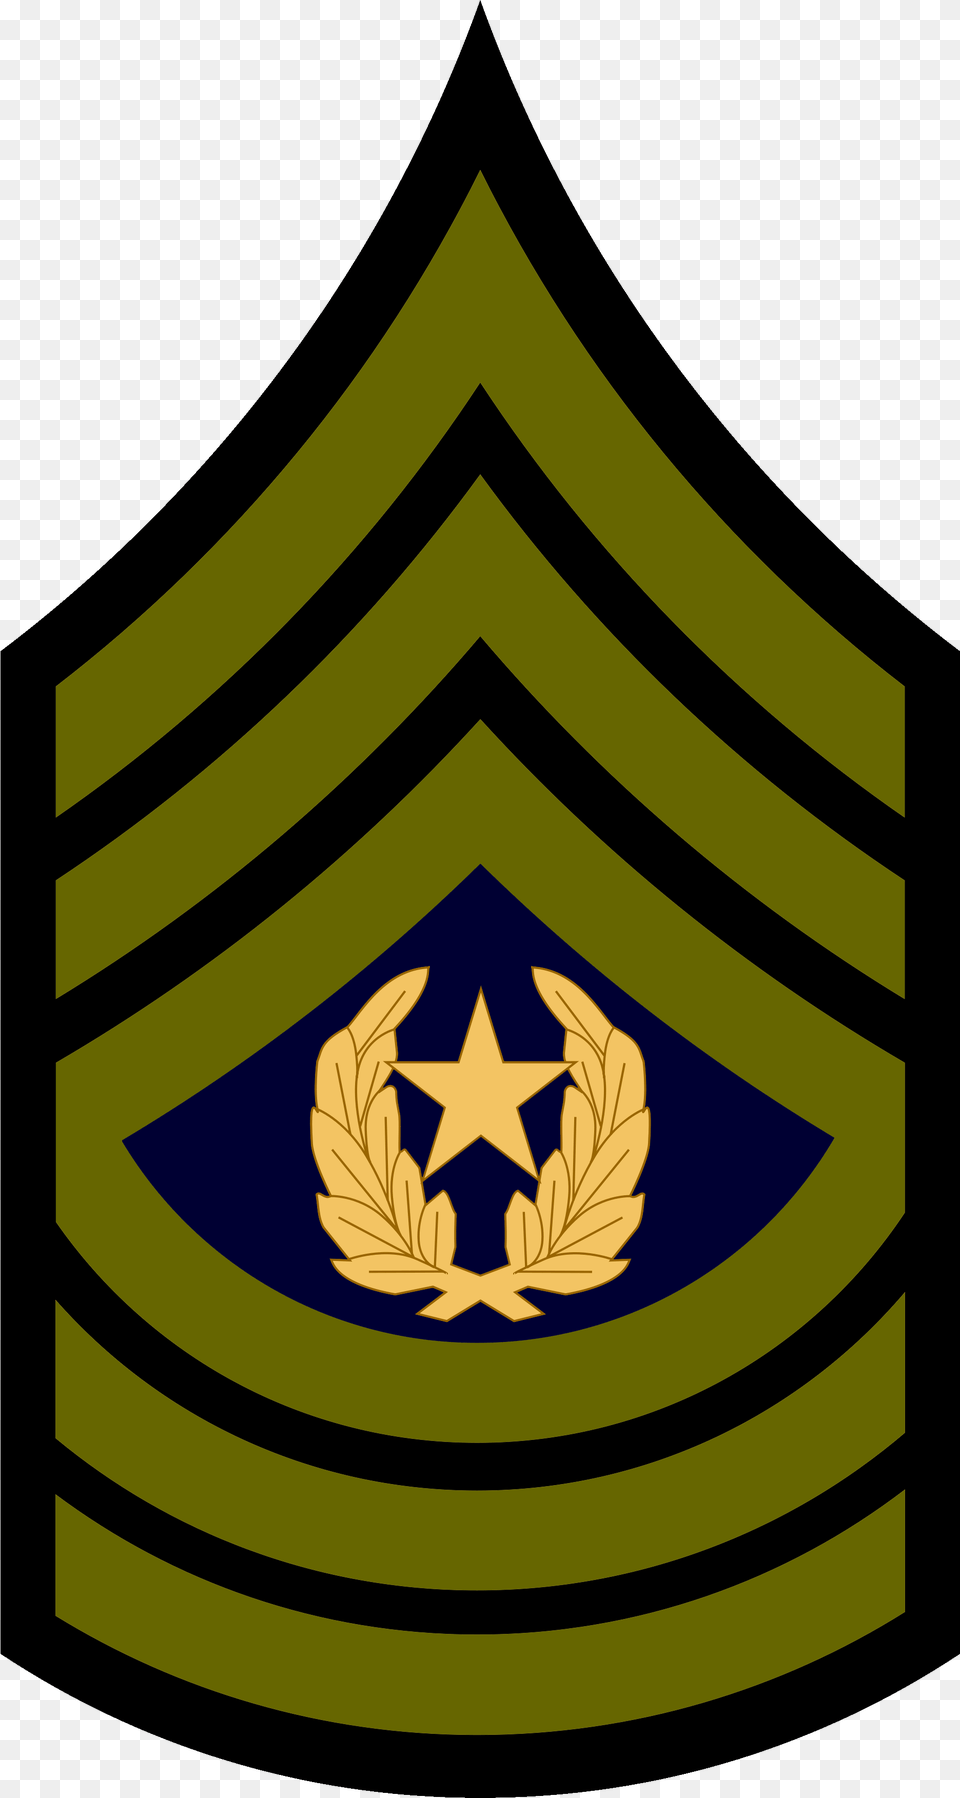 Com Military Rank Insignia Sergeant Subdued Army Master Sergeant Insignia, Logo, Symbol, Emblem Free Transparent Png